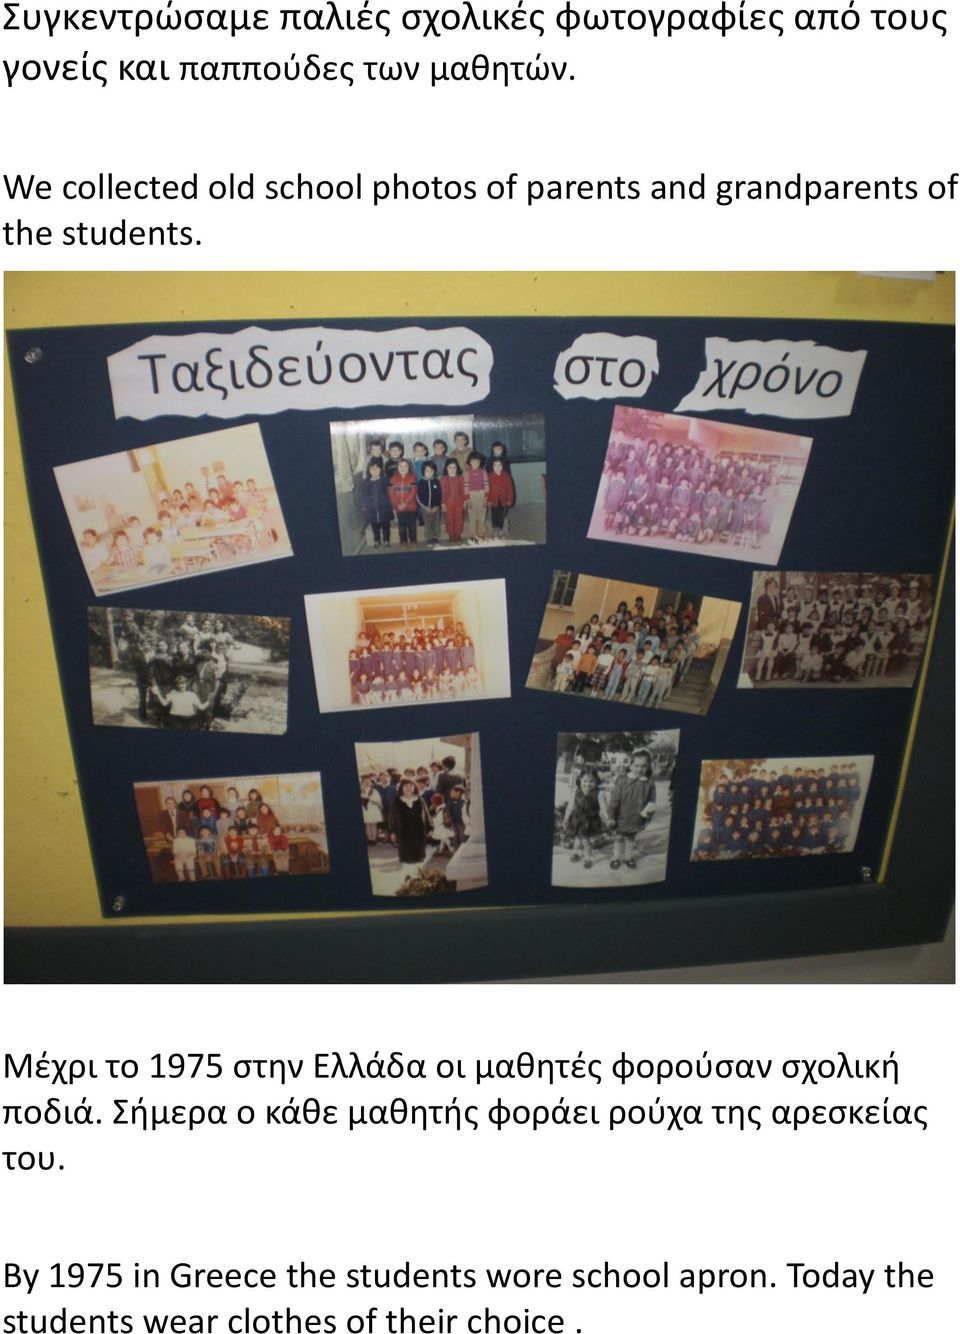 Μέχρι το 1975 στην Ελλάδα οι μαθητές φορούσαν σχολική ποδιά.